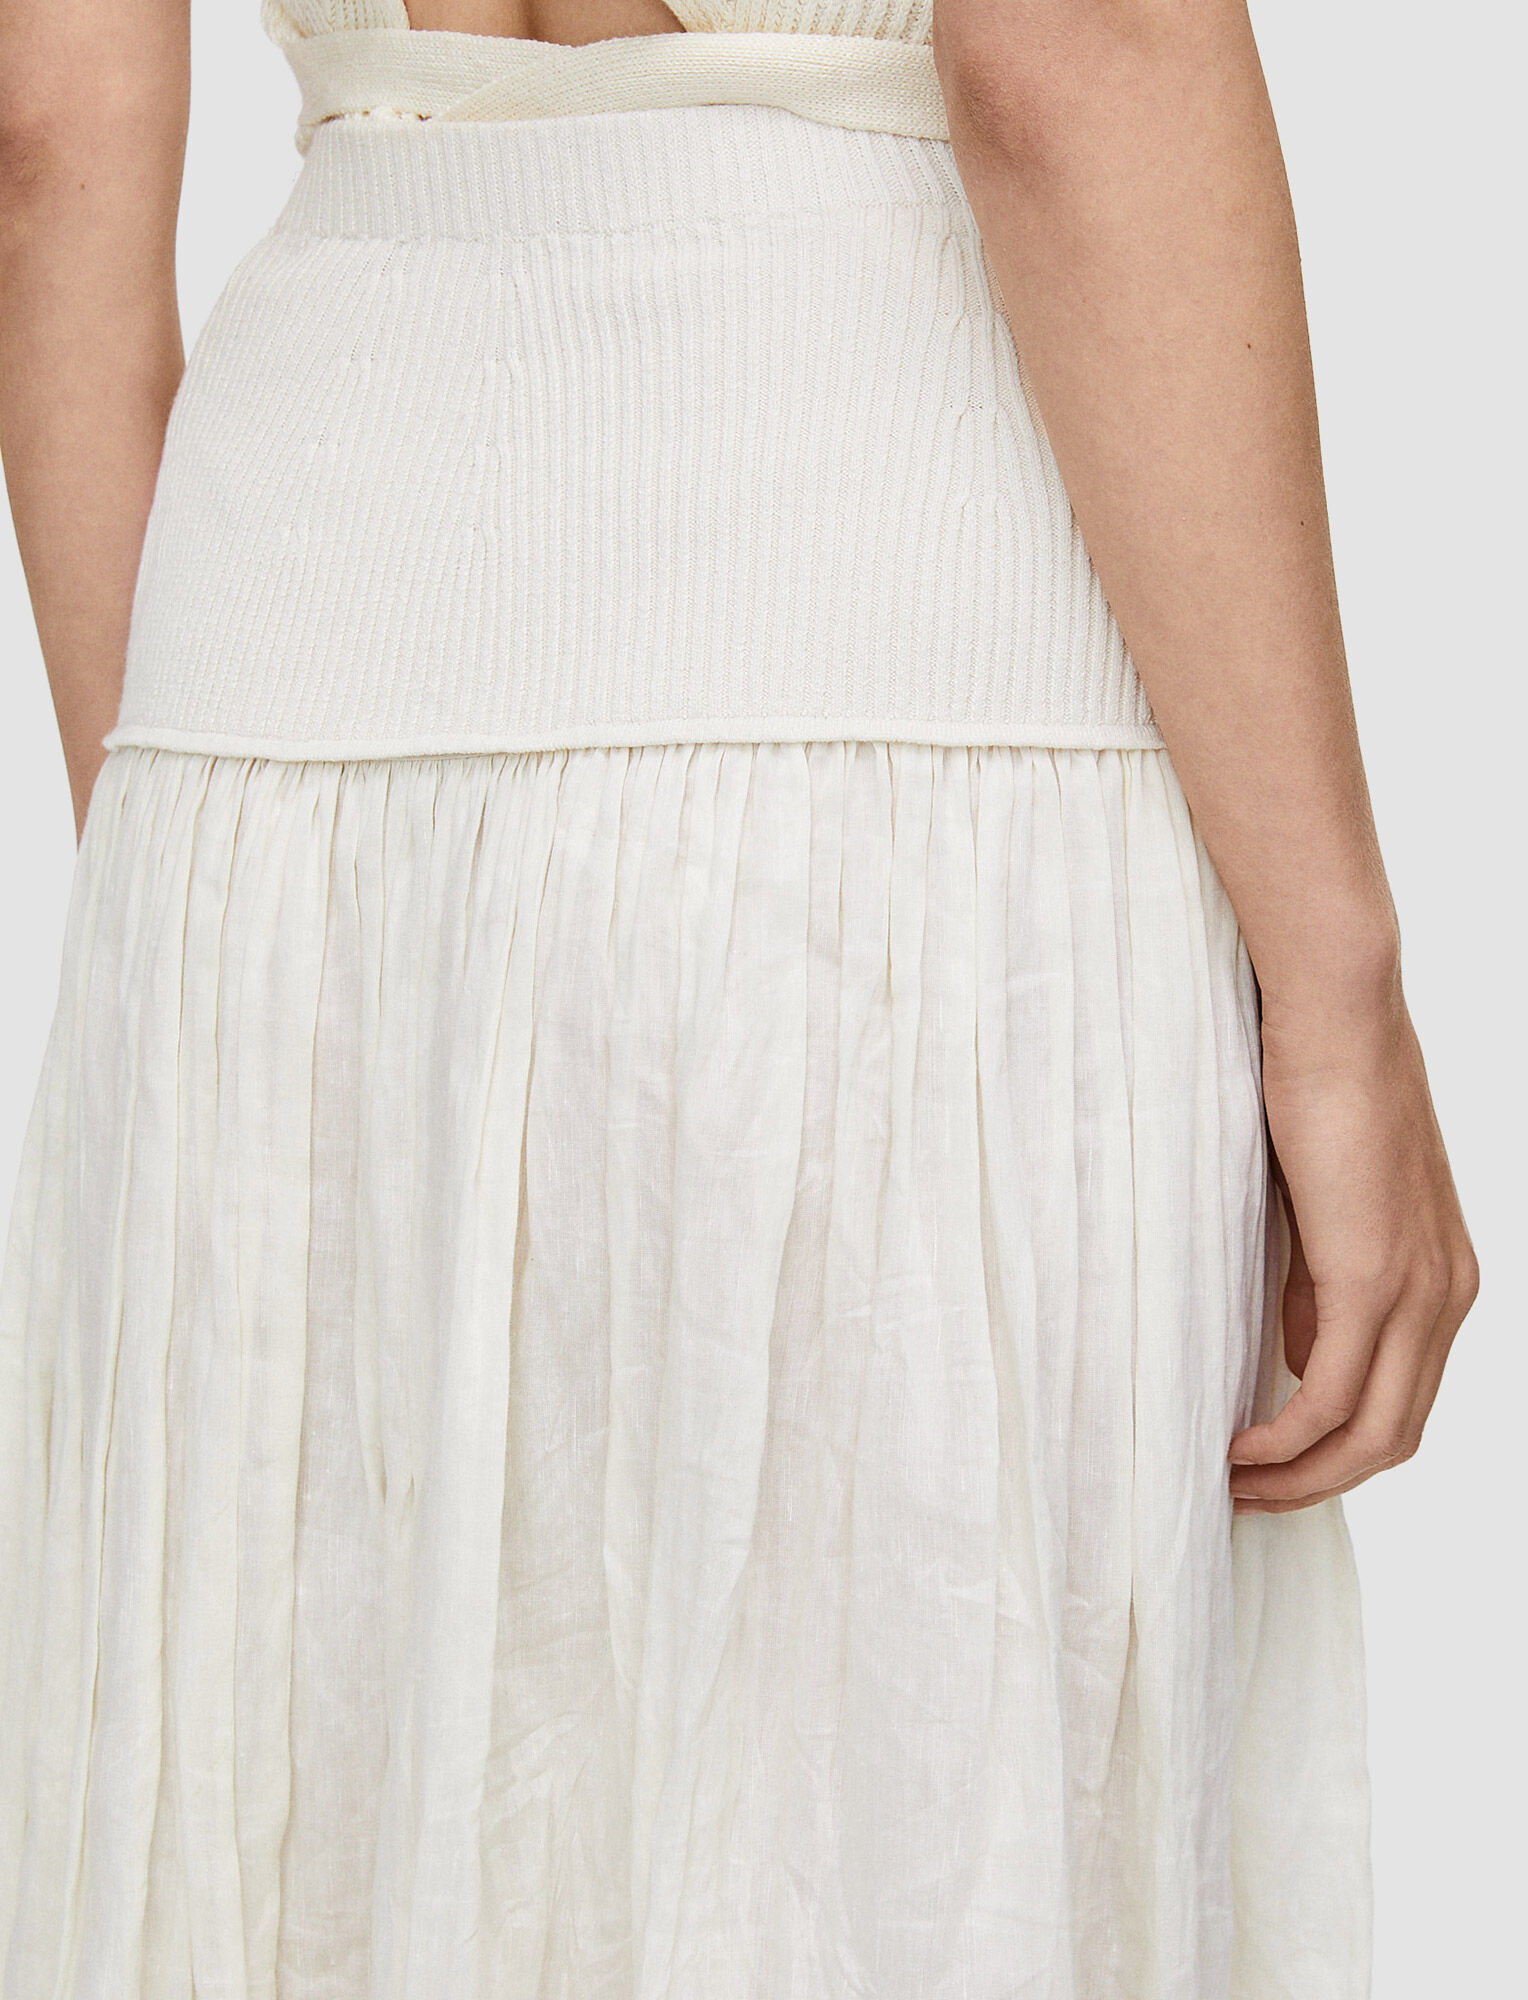 Joseph, Linen Blend Seaton Skirt, in Ivory